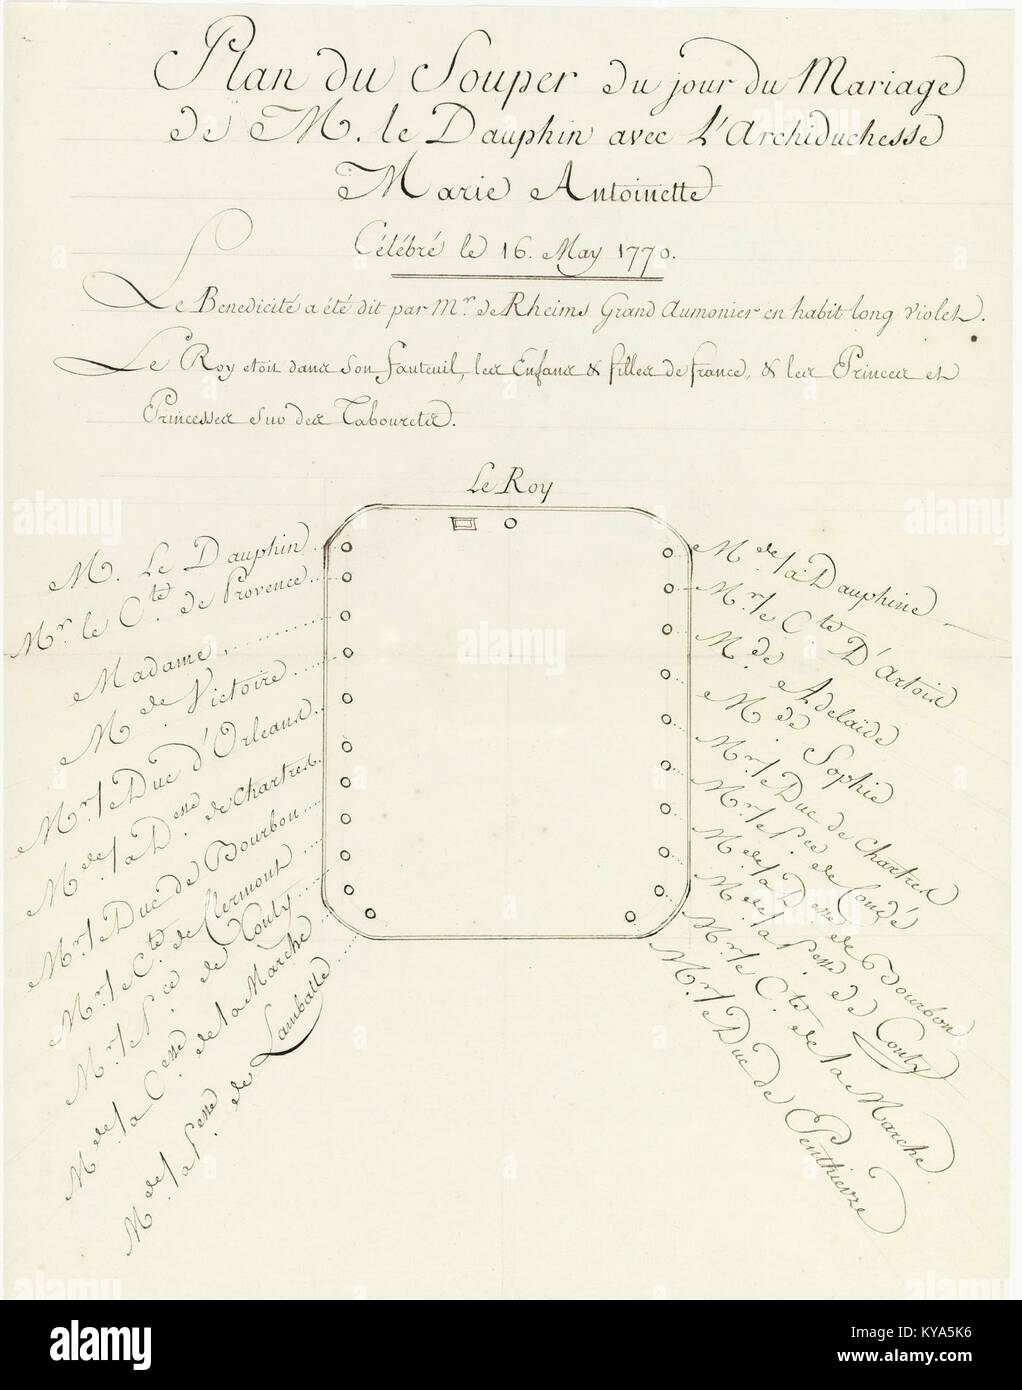 Plan du souper du mariage de M. le Dauphin avec l’Archiduchesse Marie-Antoinette 1 - Archives Nationales - K-147-14-2 Stock Photo